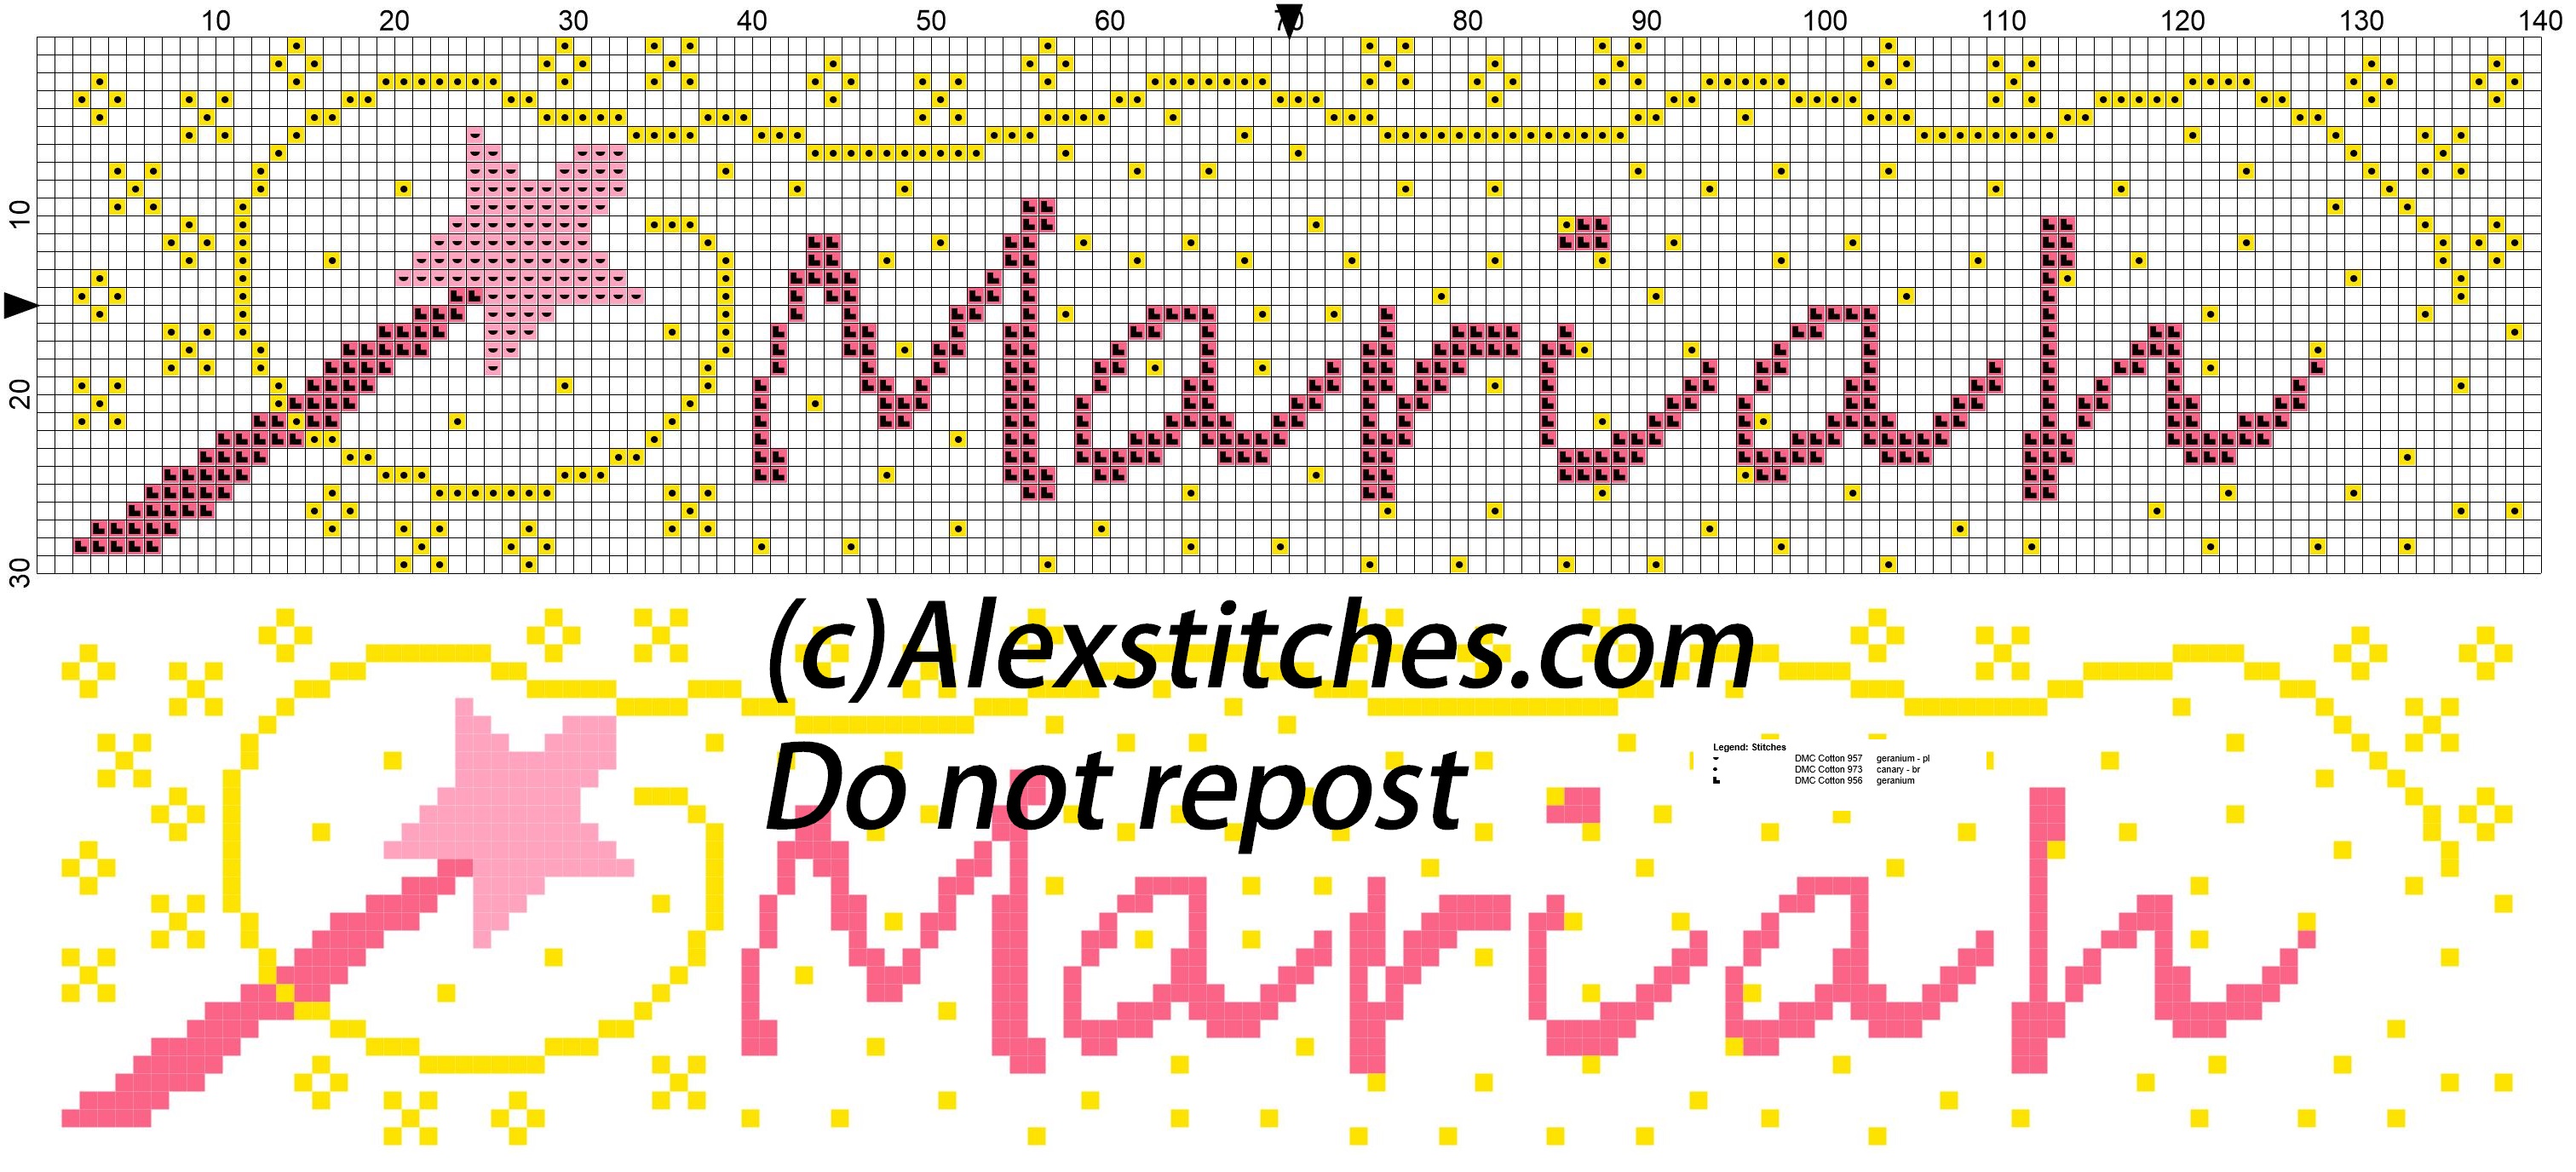 Maria name with magic wand